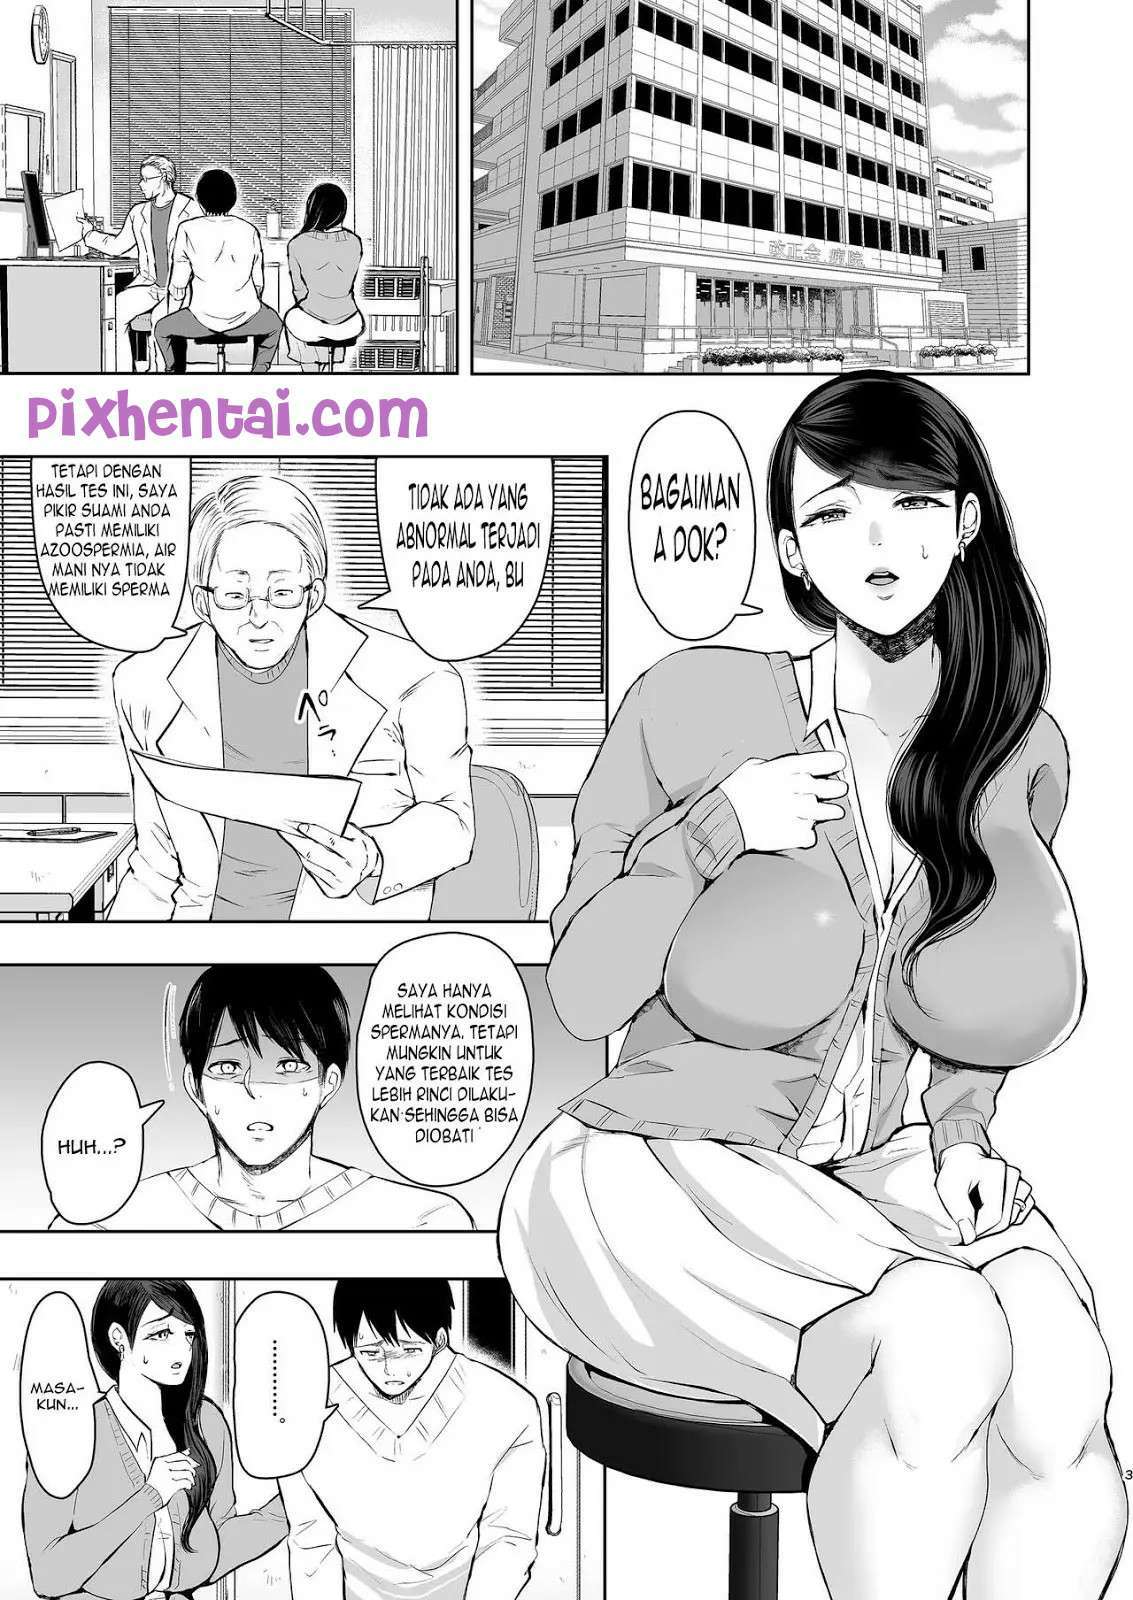 Komik hentai xxx manga sex bokep istri dihamili pria lain 02